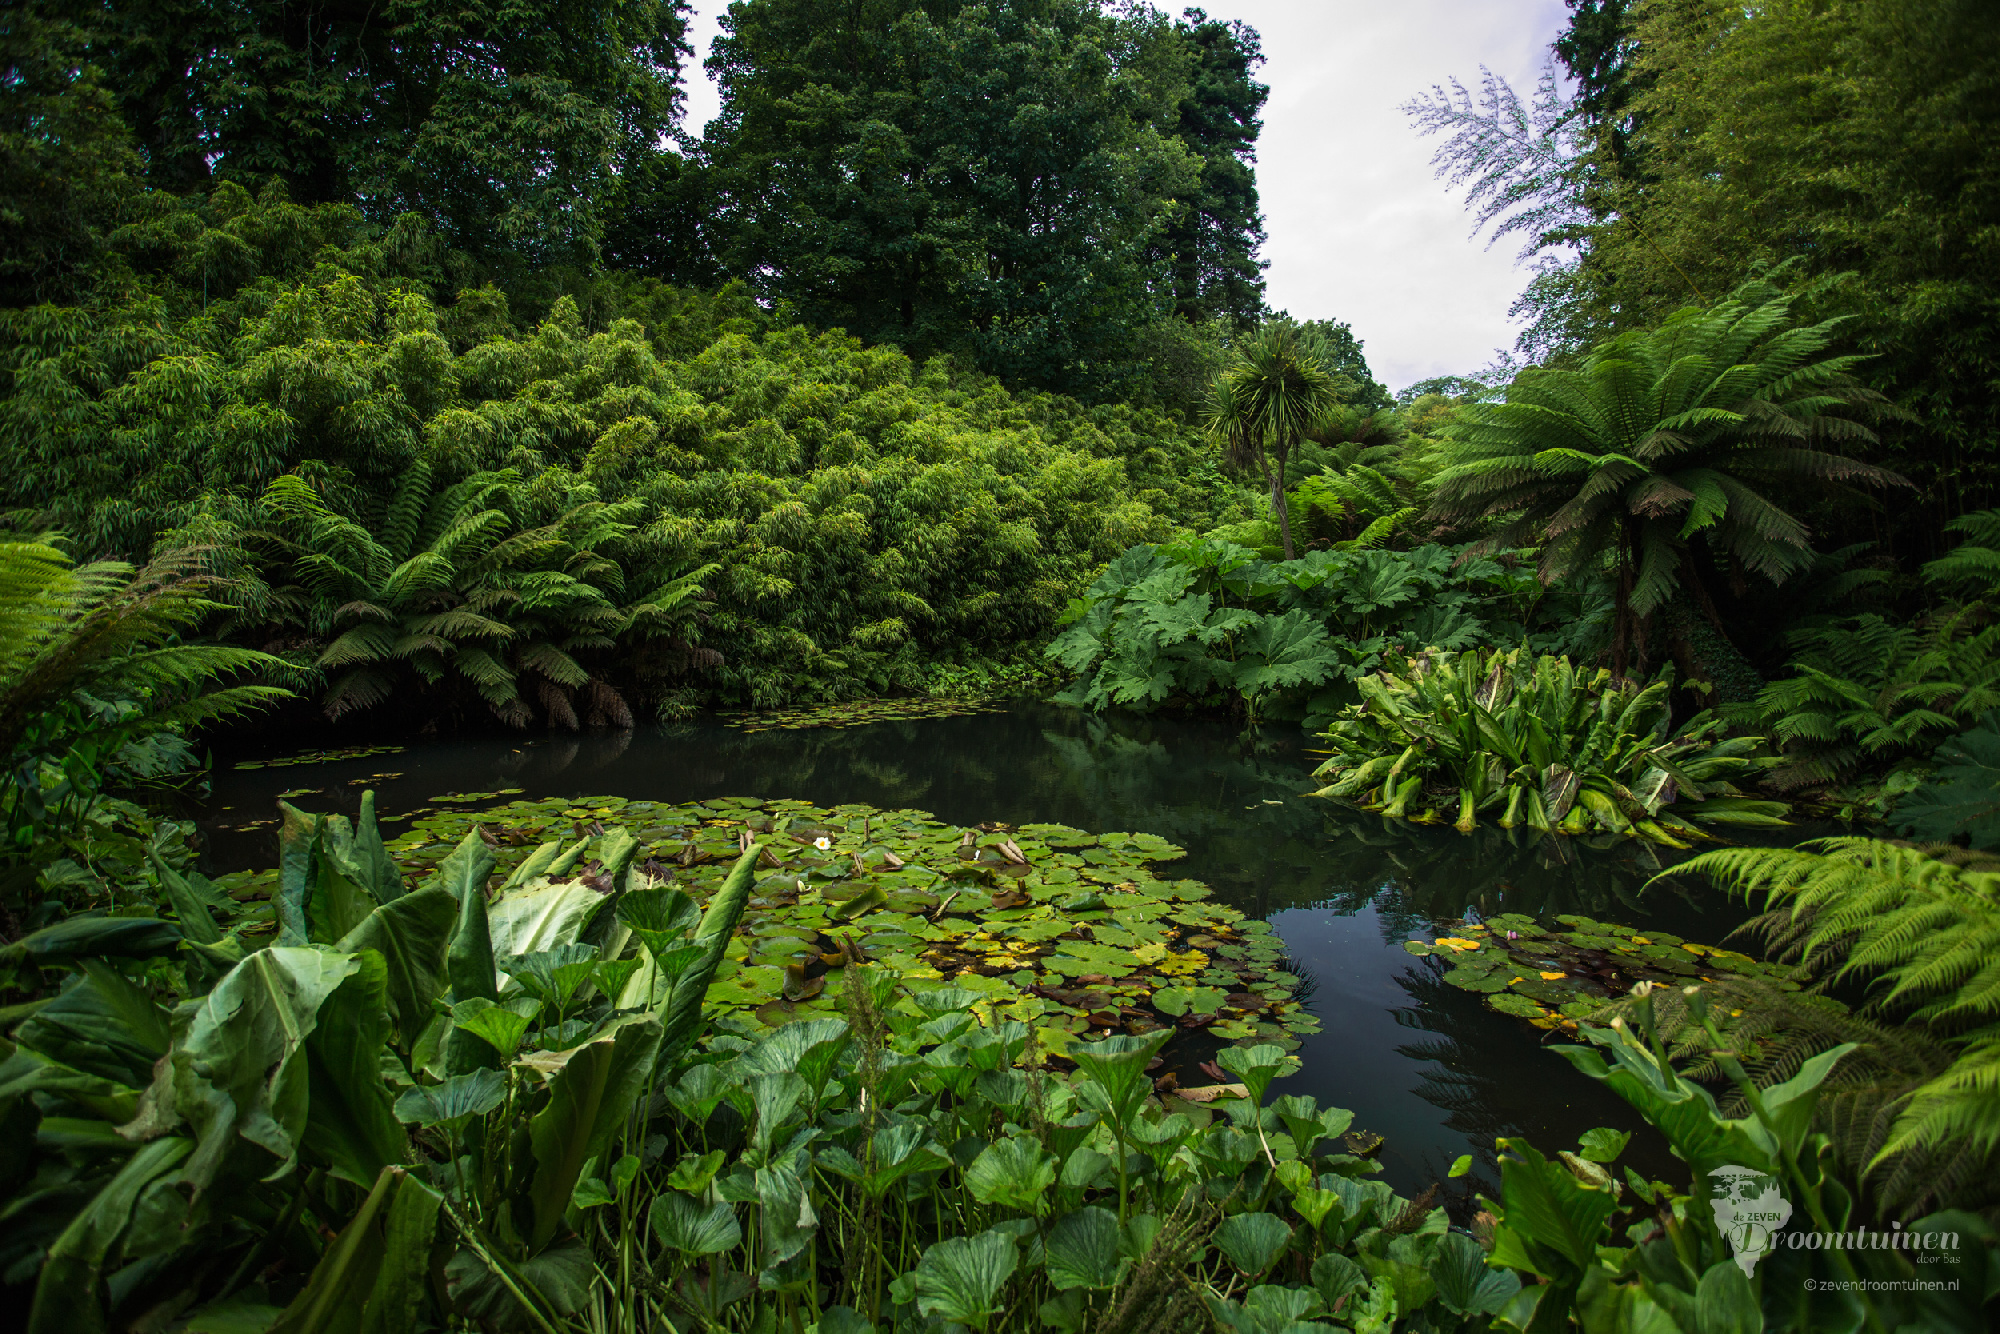 Een vijver in de befaamde Forgotten Gardens of Heligan in Engeland, waar de natuur decennialang zijn gang kon gaan en daardoor juist voor extra schoonheid en karakter heeft gezorgd 